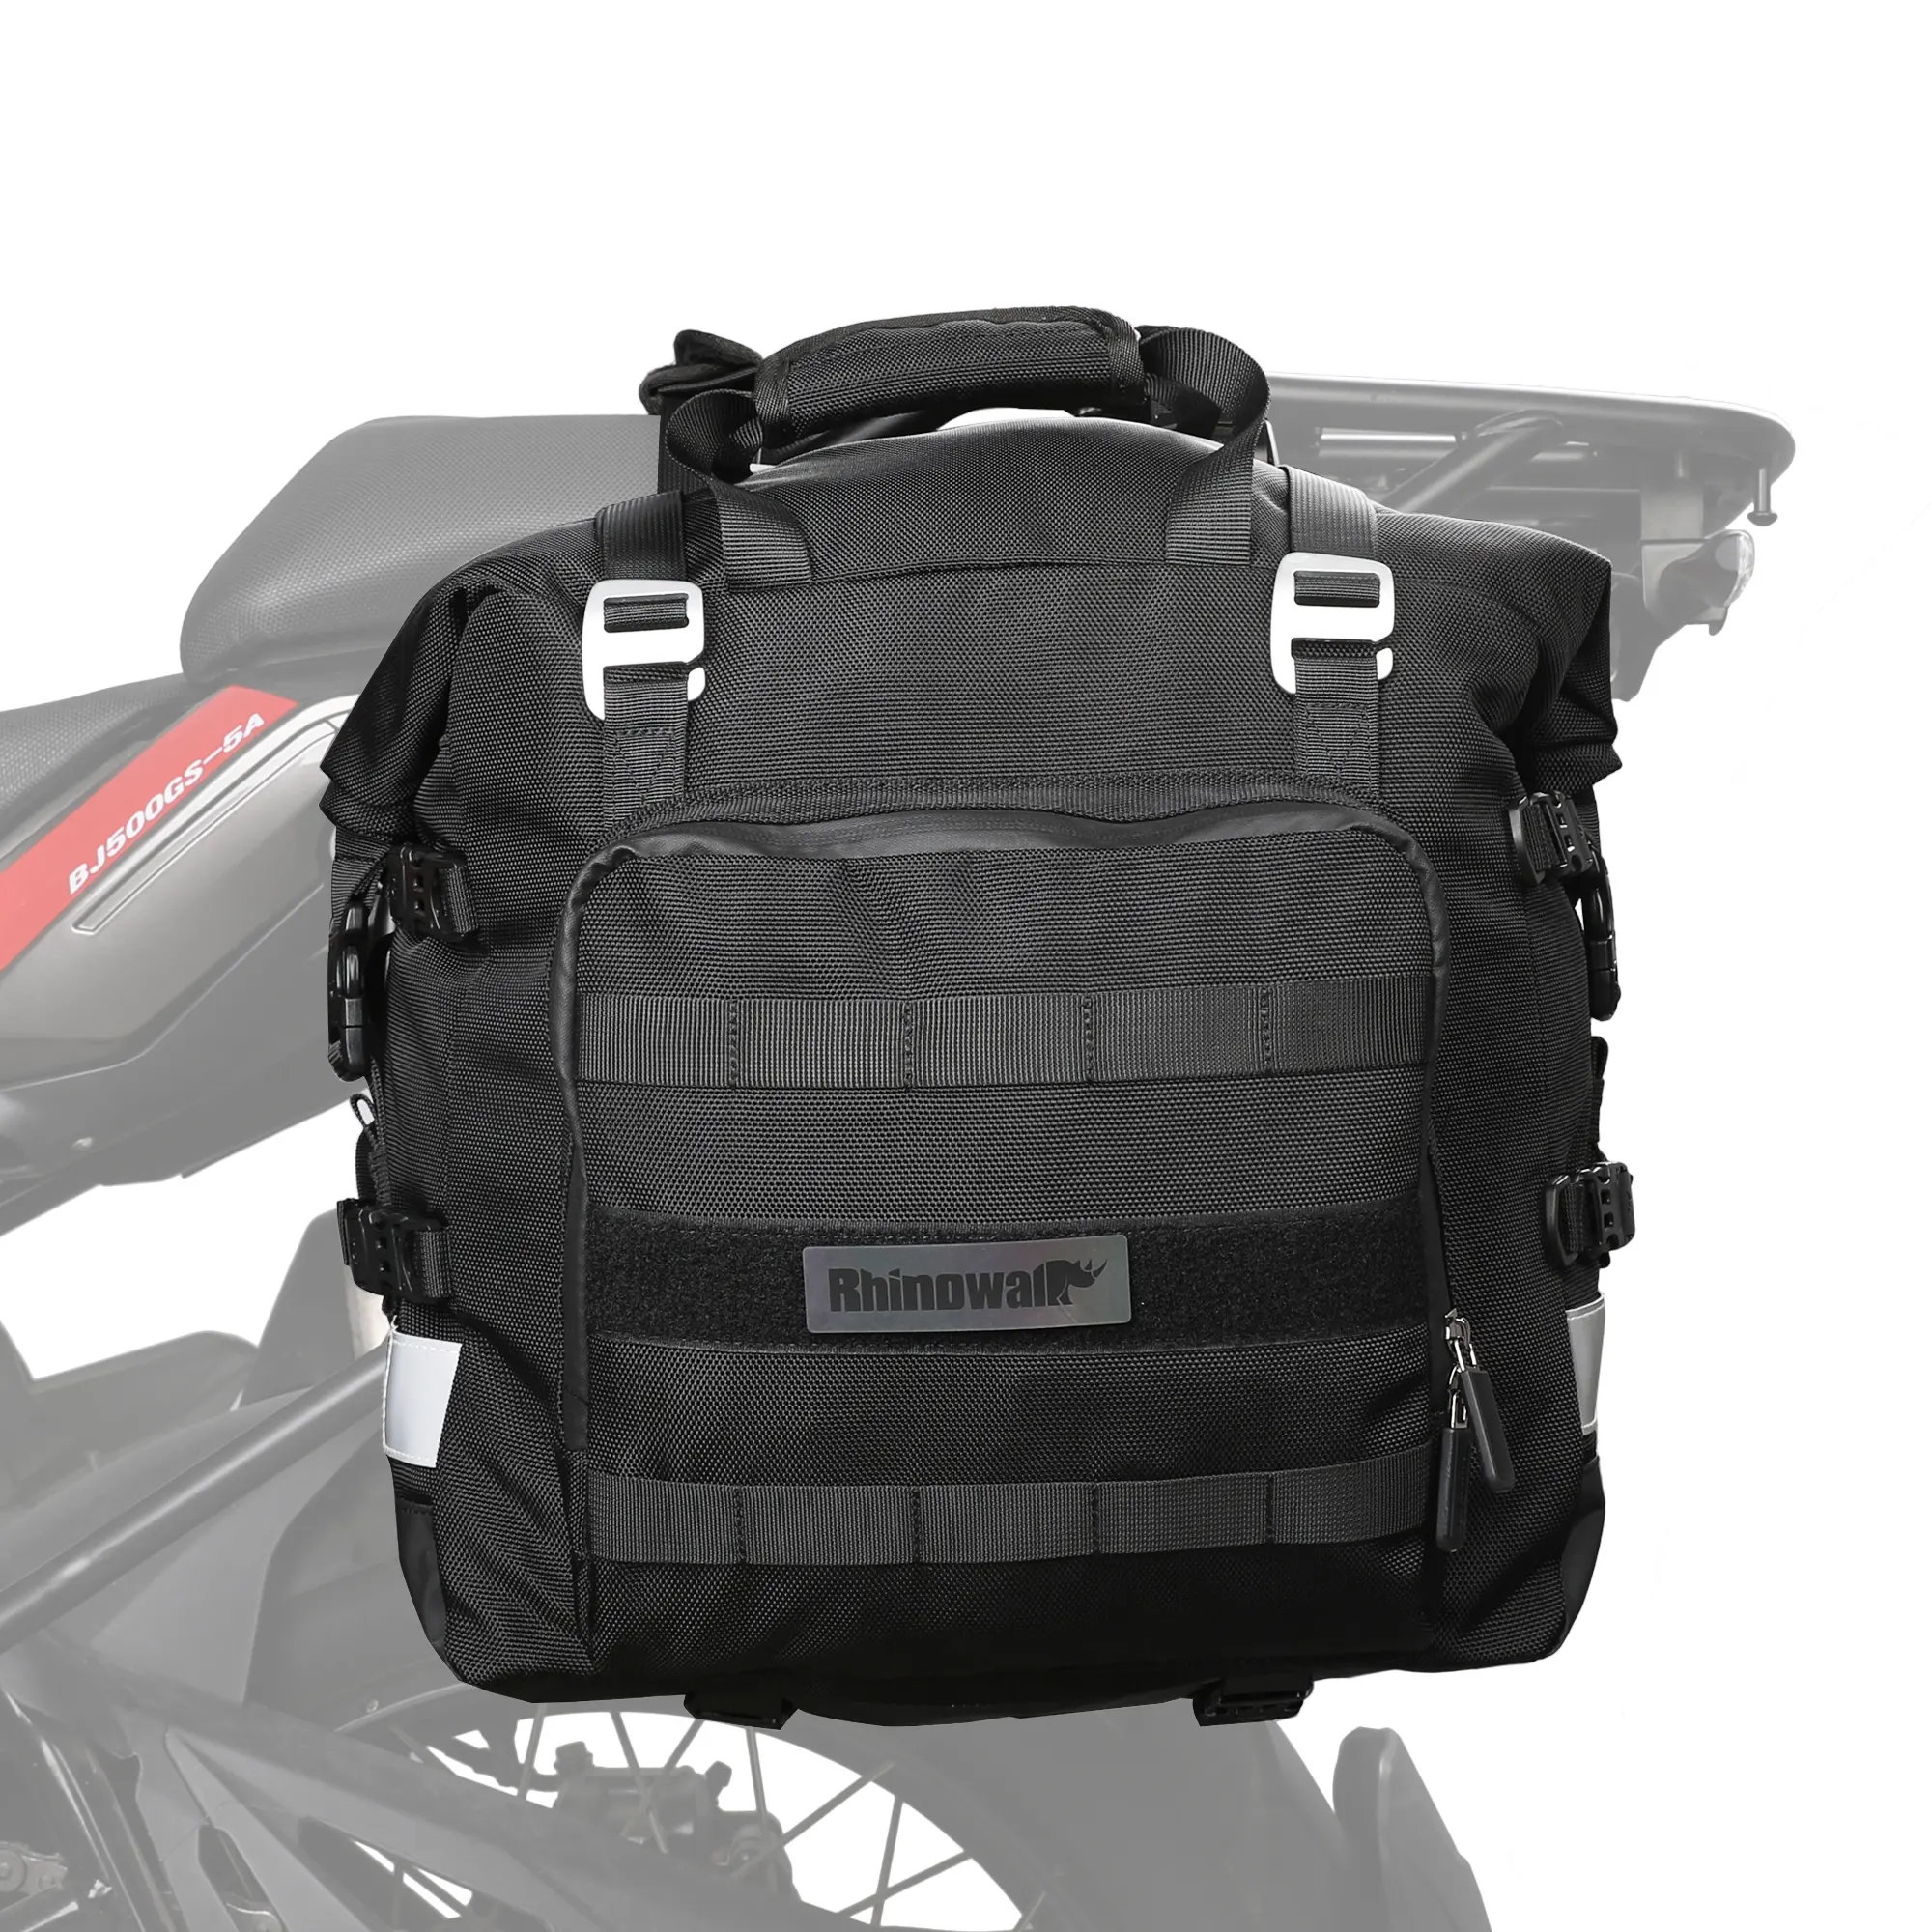 Rhinoworld-sac de siège latéral de moto de 20l, sacoche de selle de moto pour bagages de voyage de moto ADV